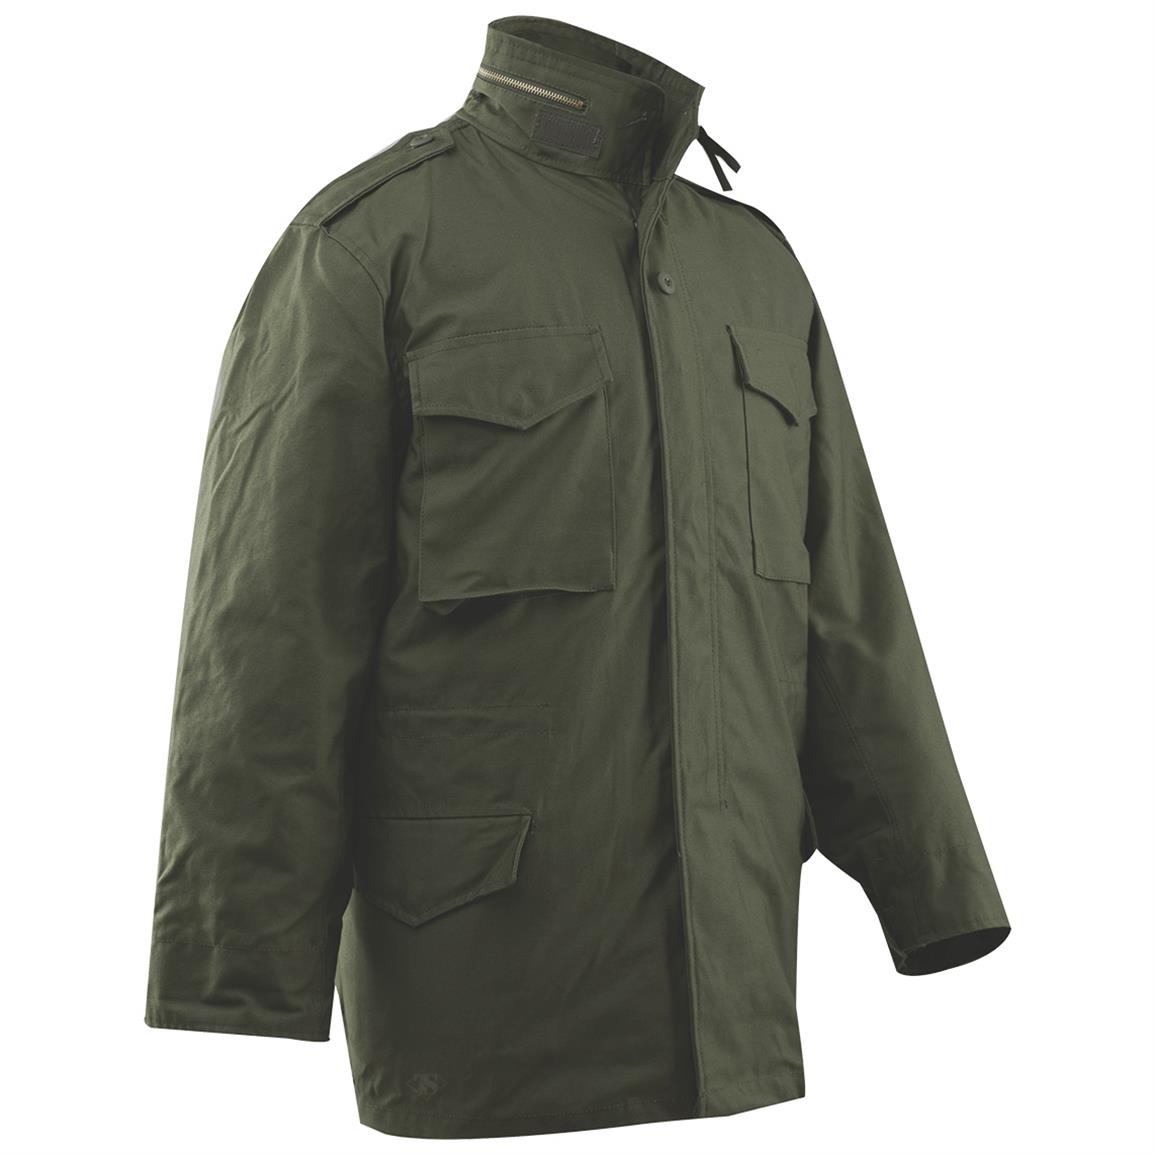 Tru-Spec Men's M-65 Field Coat with Liner - 671224, Tactical Clothing ...